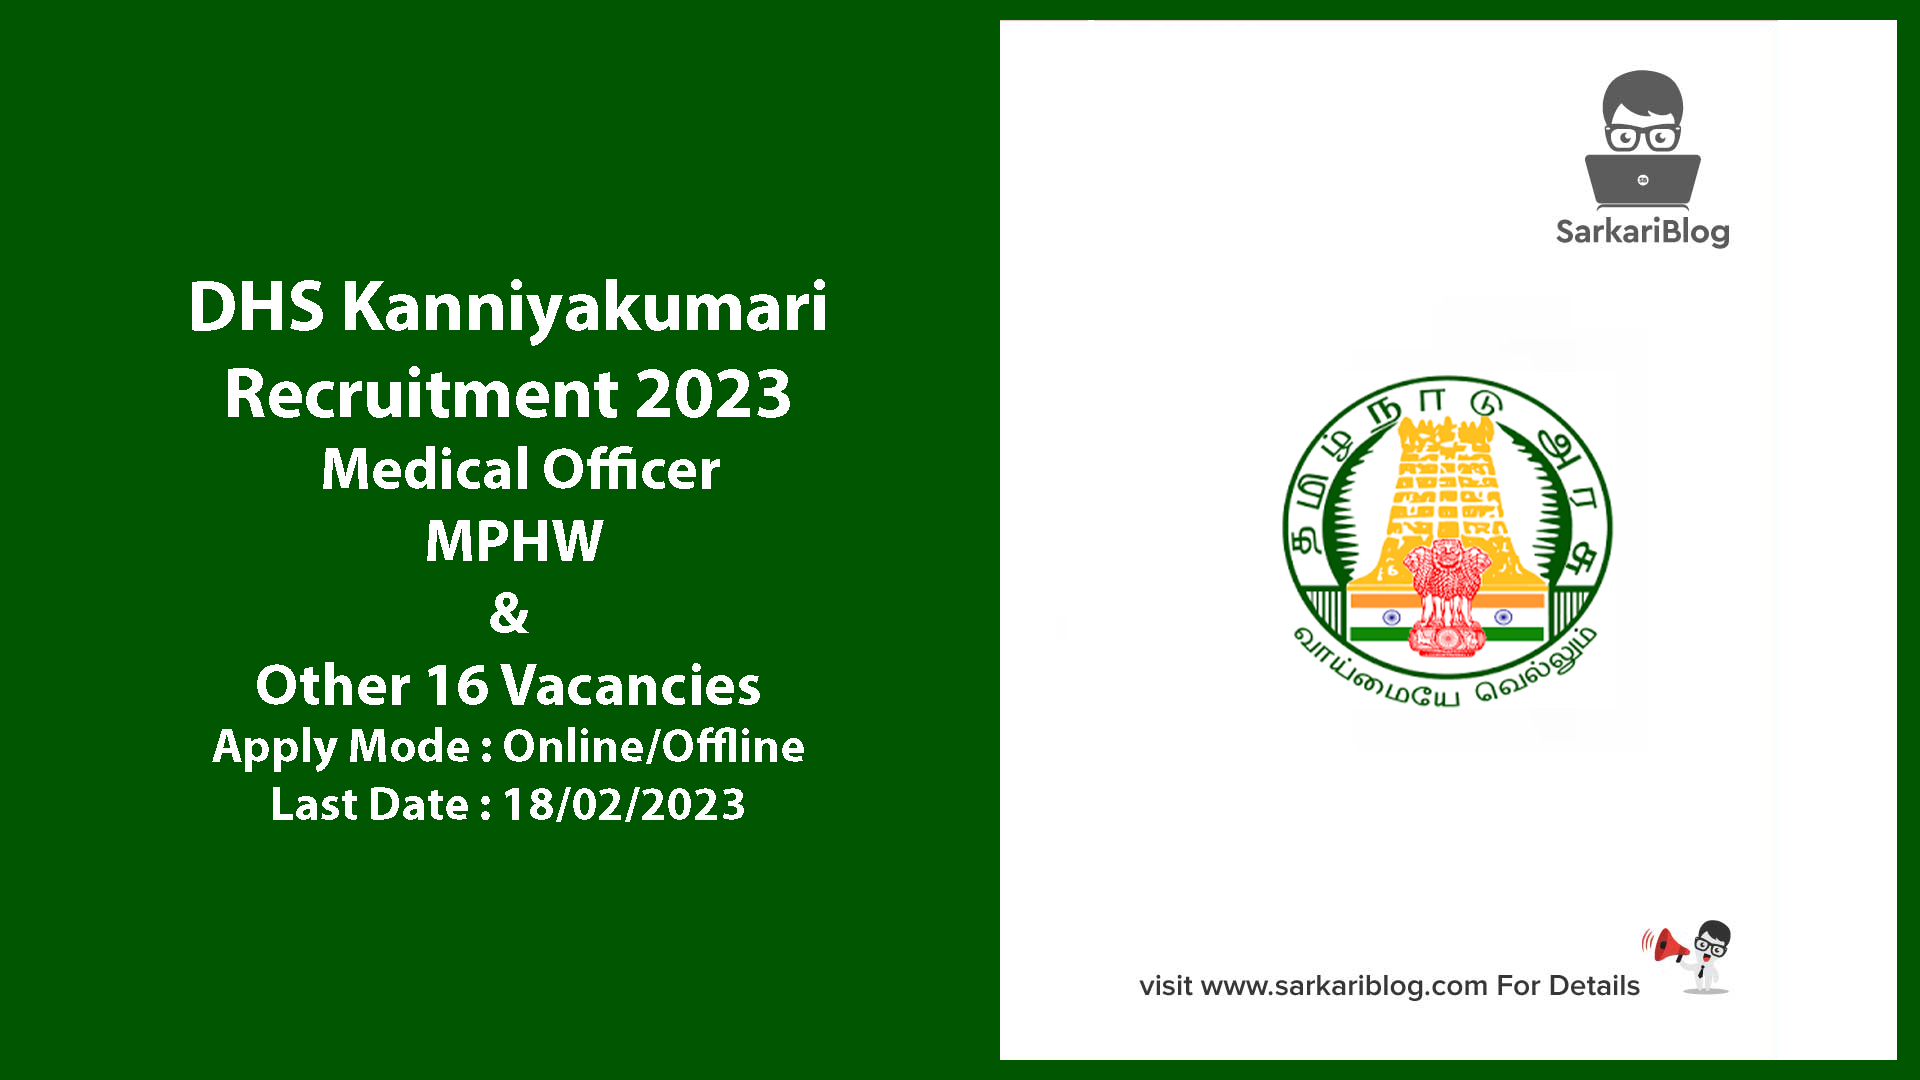 DHS Kanniyakumari Recruitment 2023